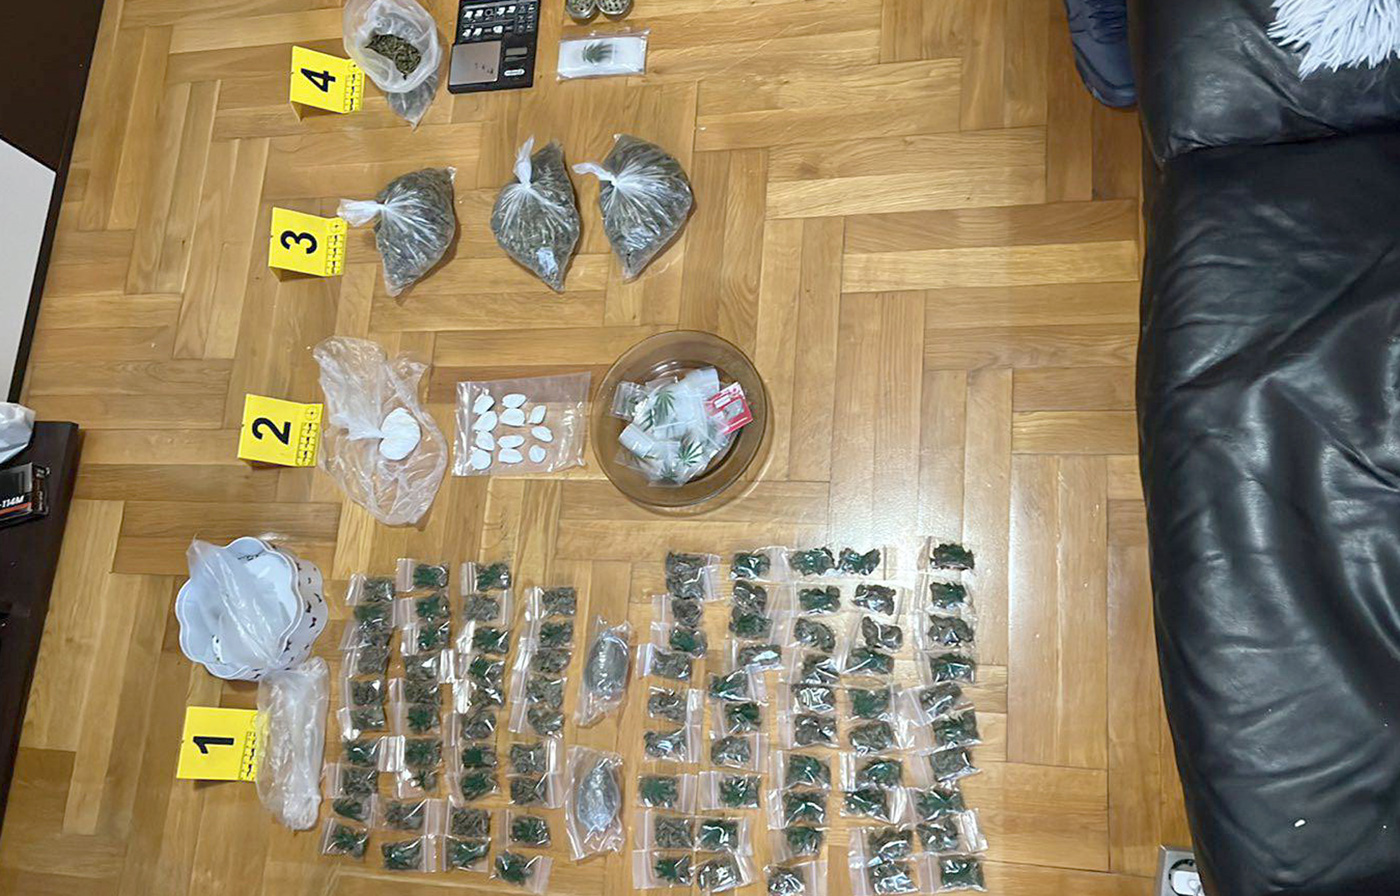 Policija pronašla narkotike u stanu i uhapsila osumnjičenu